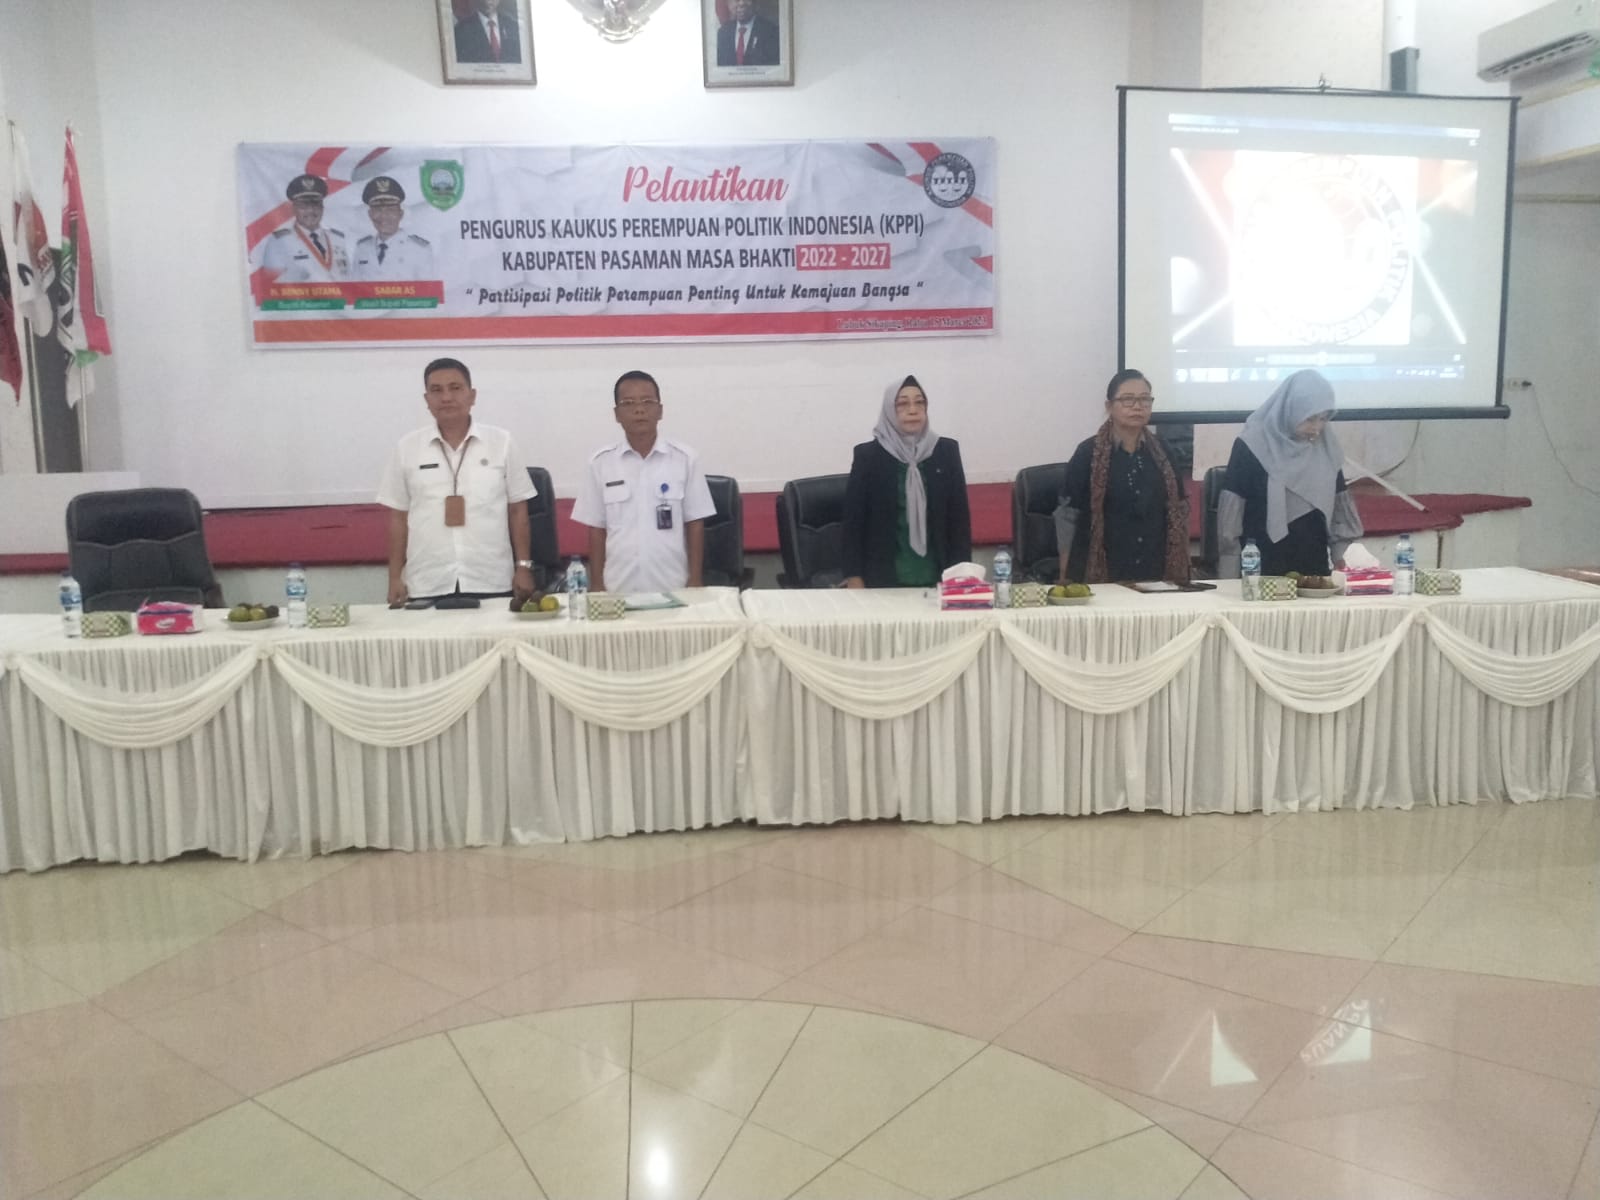 Ketua DPD KPPI Prop Sumbar Lantik Musliarni, SE., MM, selaku Ketua DPC KPPI Kabupaten Pasaman Periode 2022-2027